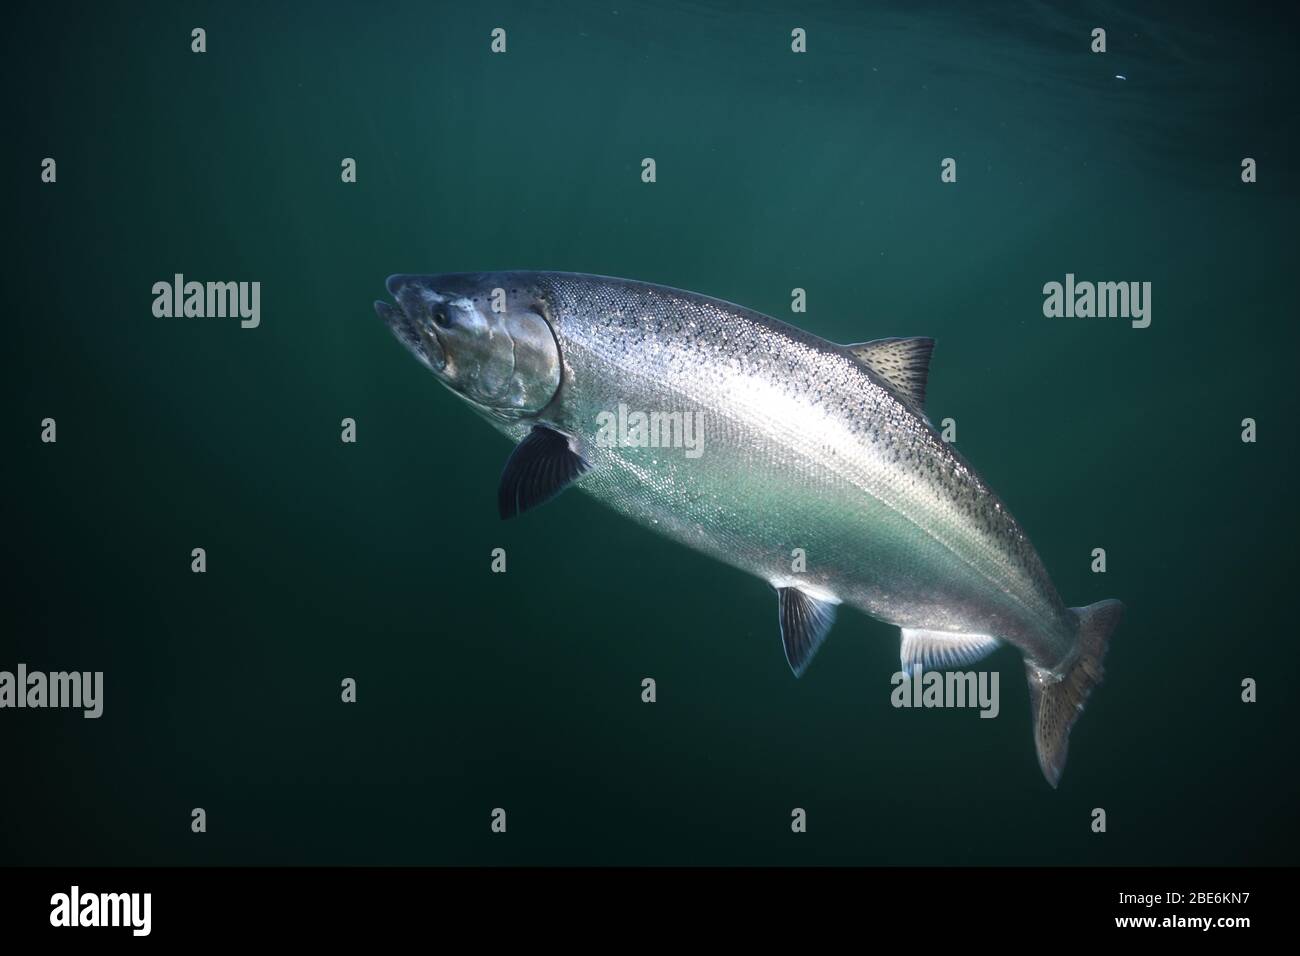 Salmone Chinook o salmone King, Oncorhynchus tshawytscha, catturato con un esca pesca nuoto in oceano aperto o lago. Foto Stock